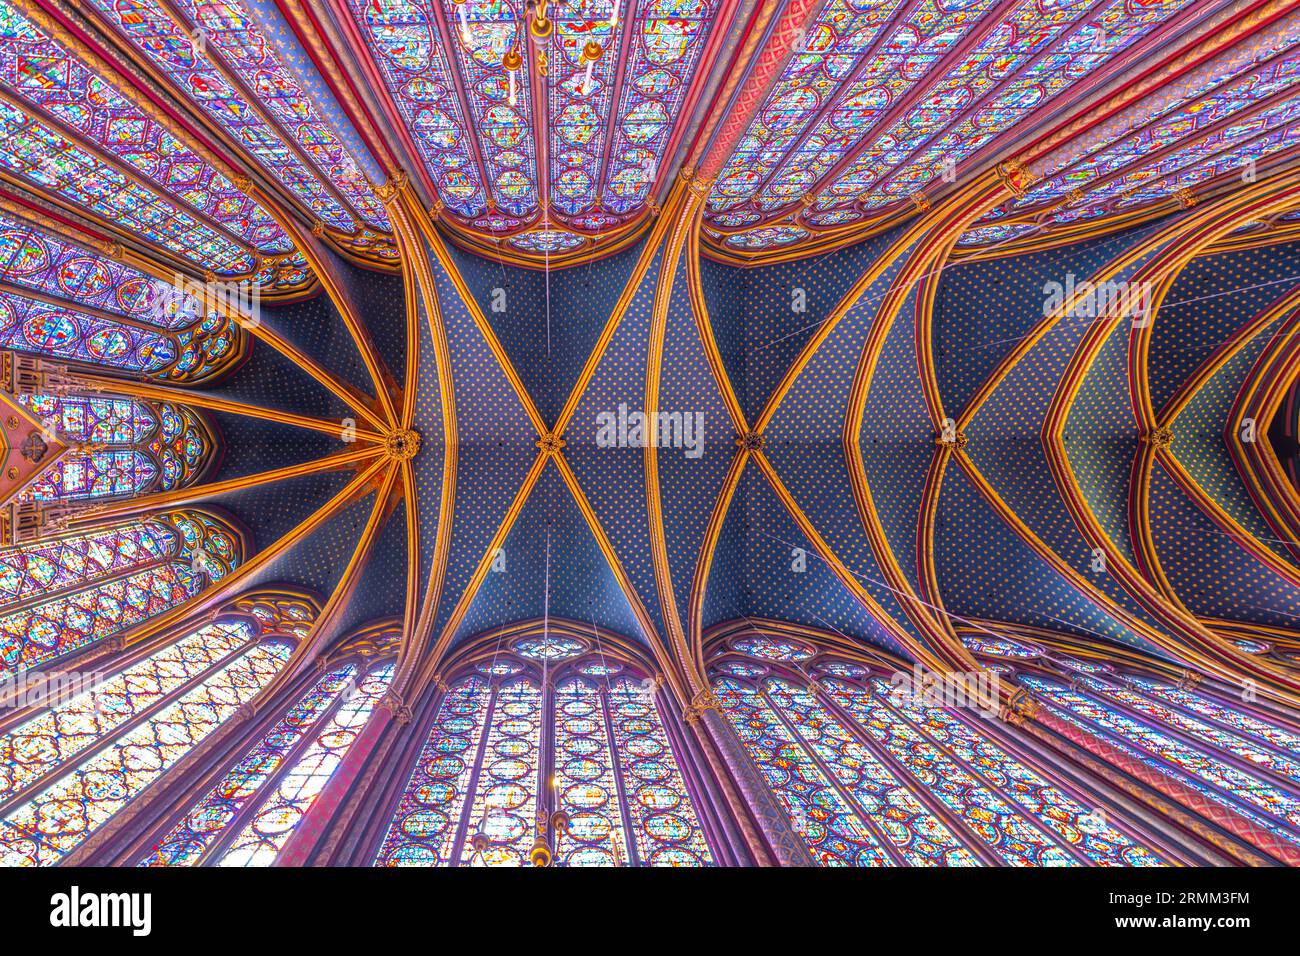 Monumentales Interieur der Sainte-Chapelle mit Buntglasfenstern, obere Ebene der königlichen Kapelle im gotischen Stil. Palais de la Cite, Paris, Frankreich Stockfoto